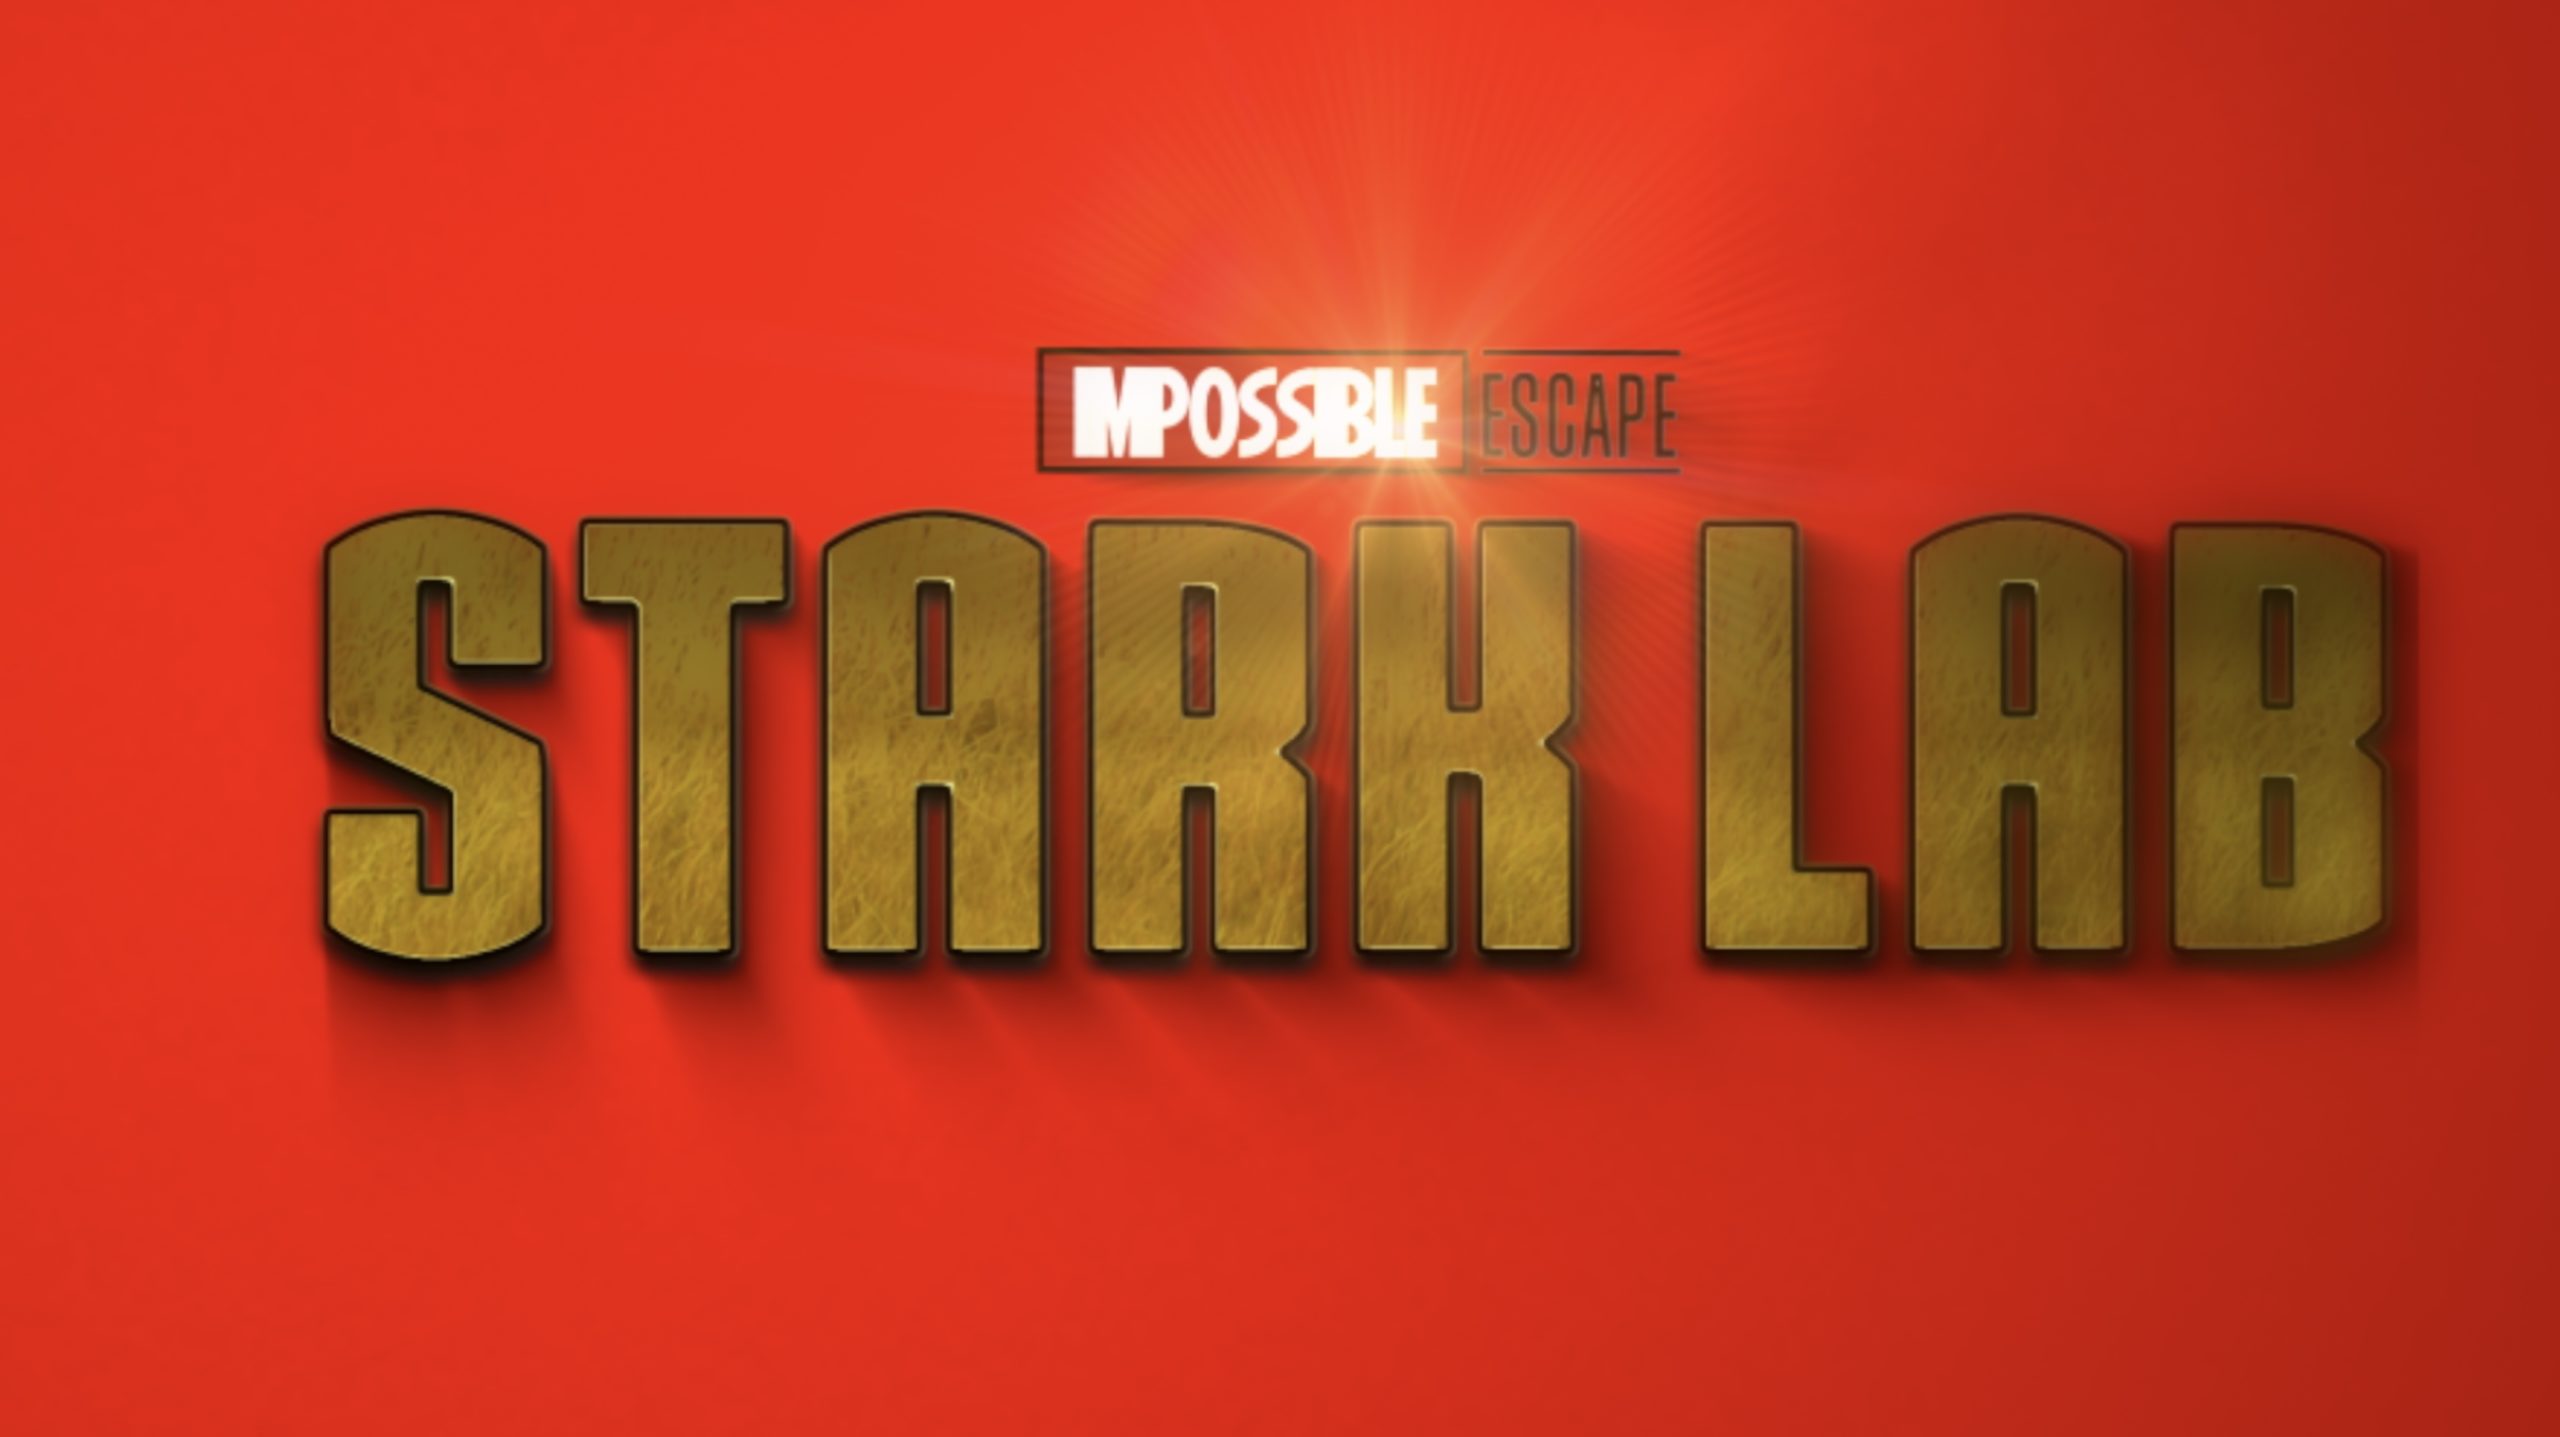 Stark Lab at Impossible Escape Hesperia